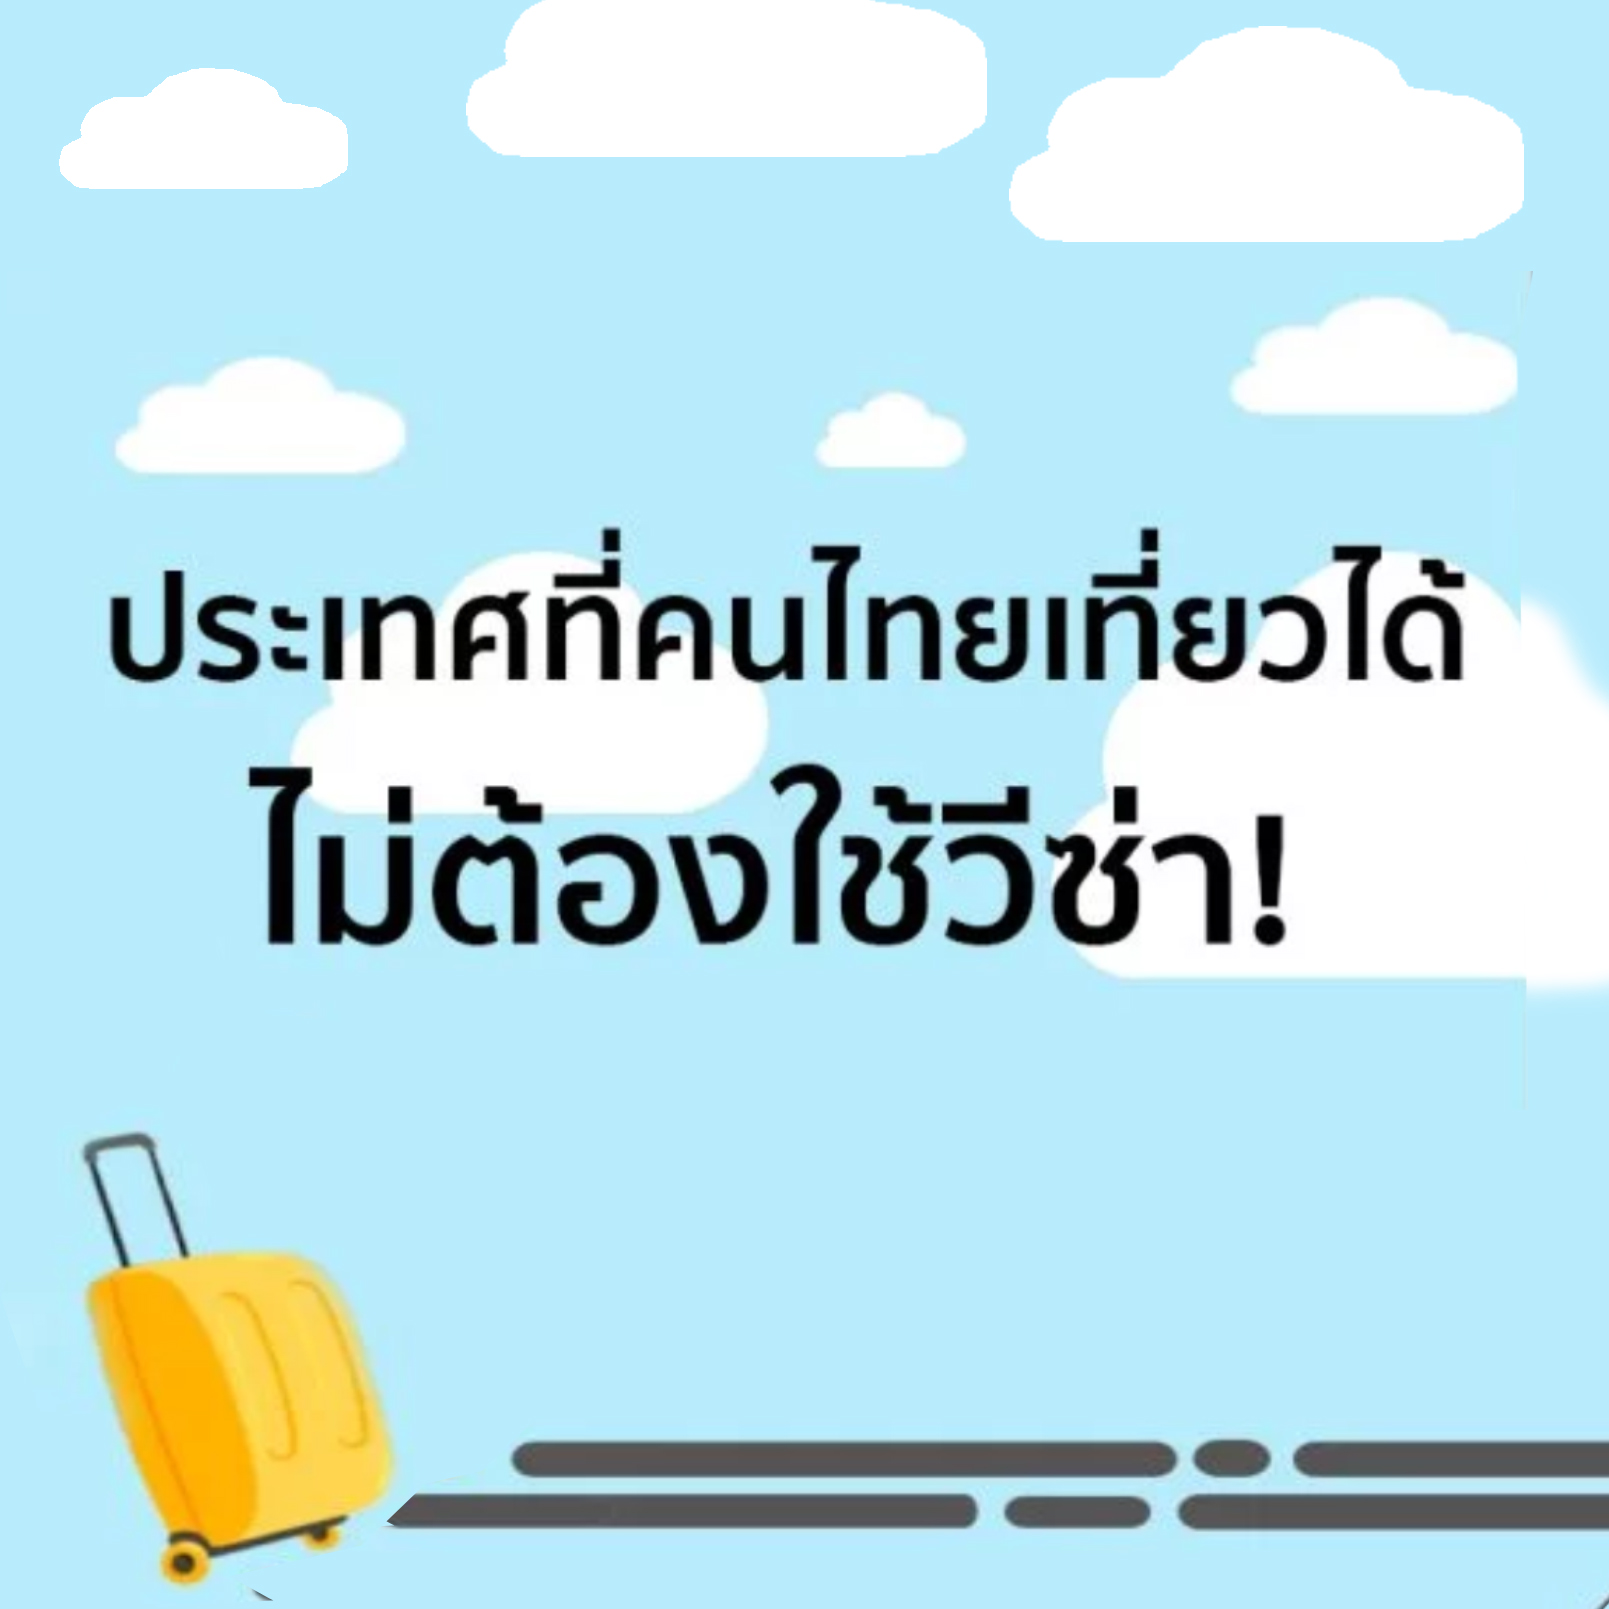 เที่ยวต่างประเทศที่ไหนดี 32 ประเทศฟรีวีซ่า คนไทยผ่านฉลุย | Changtrixget